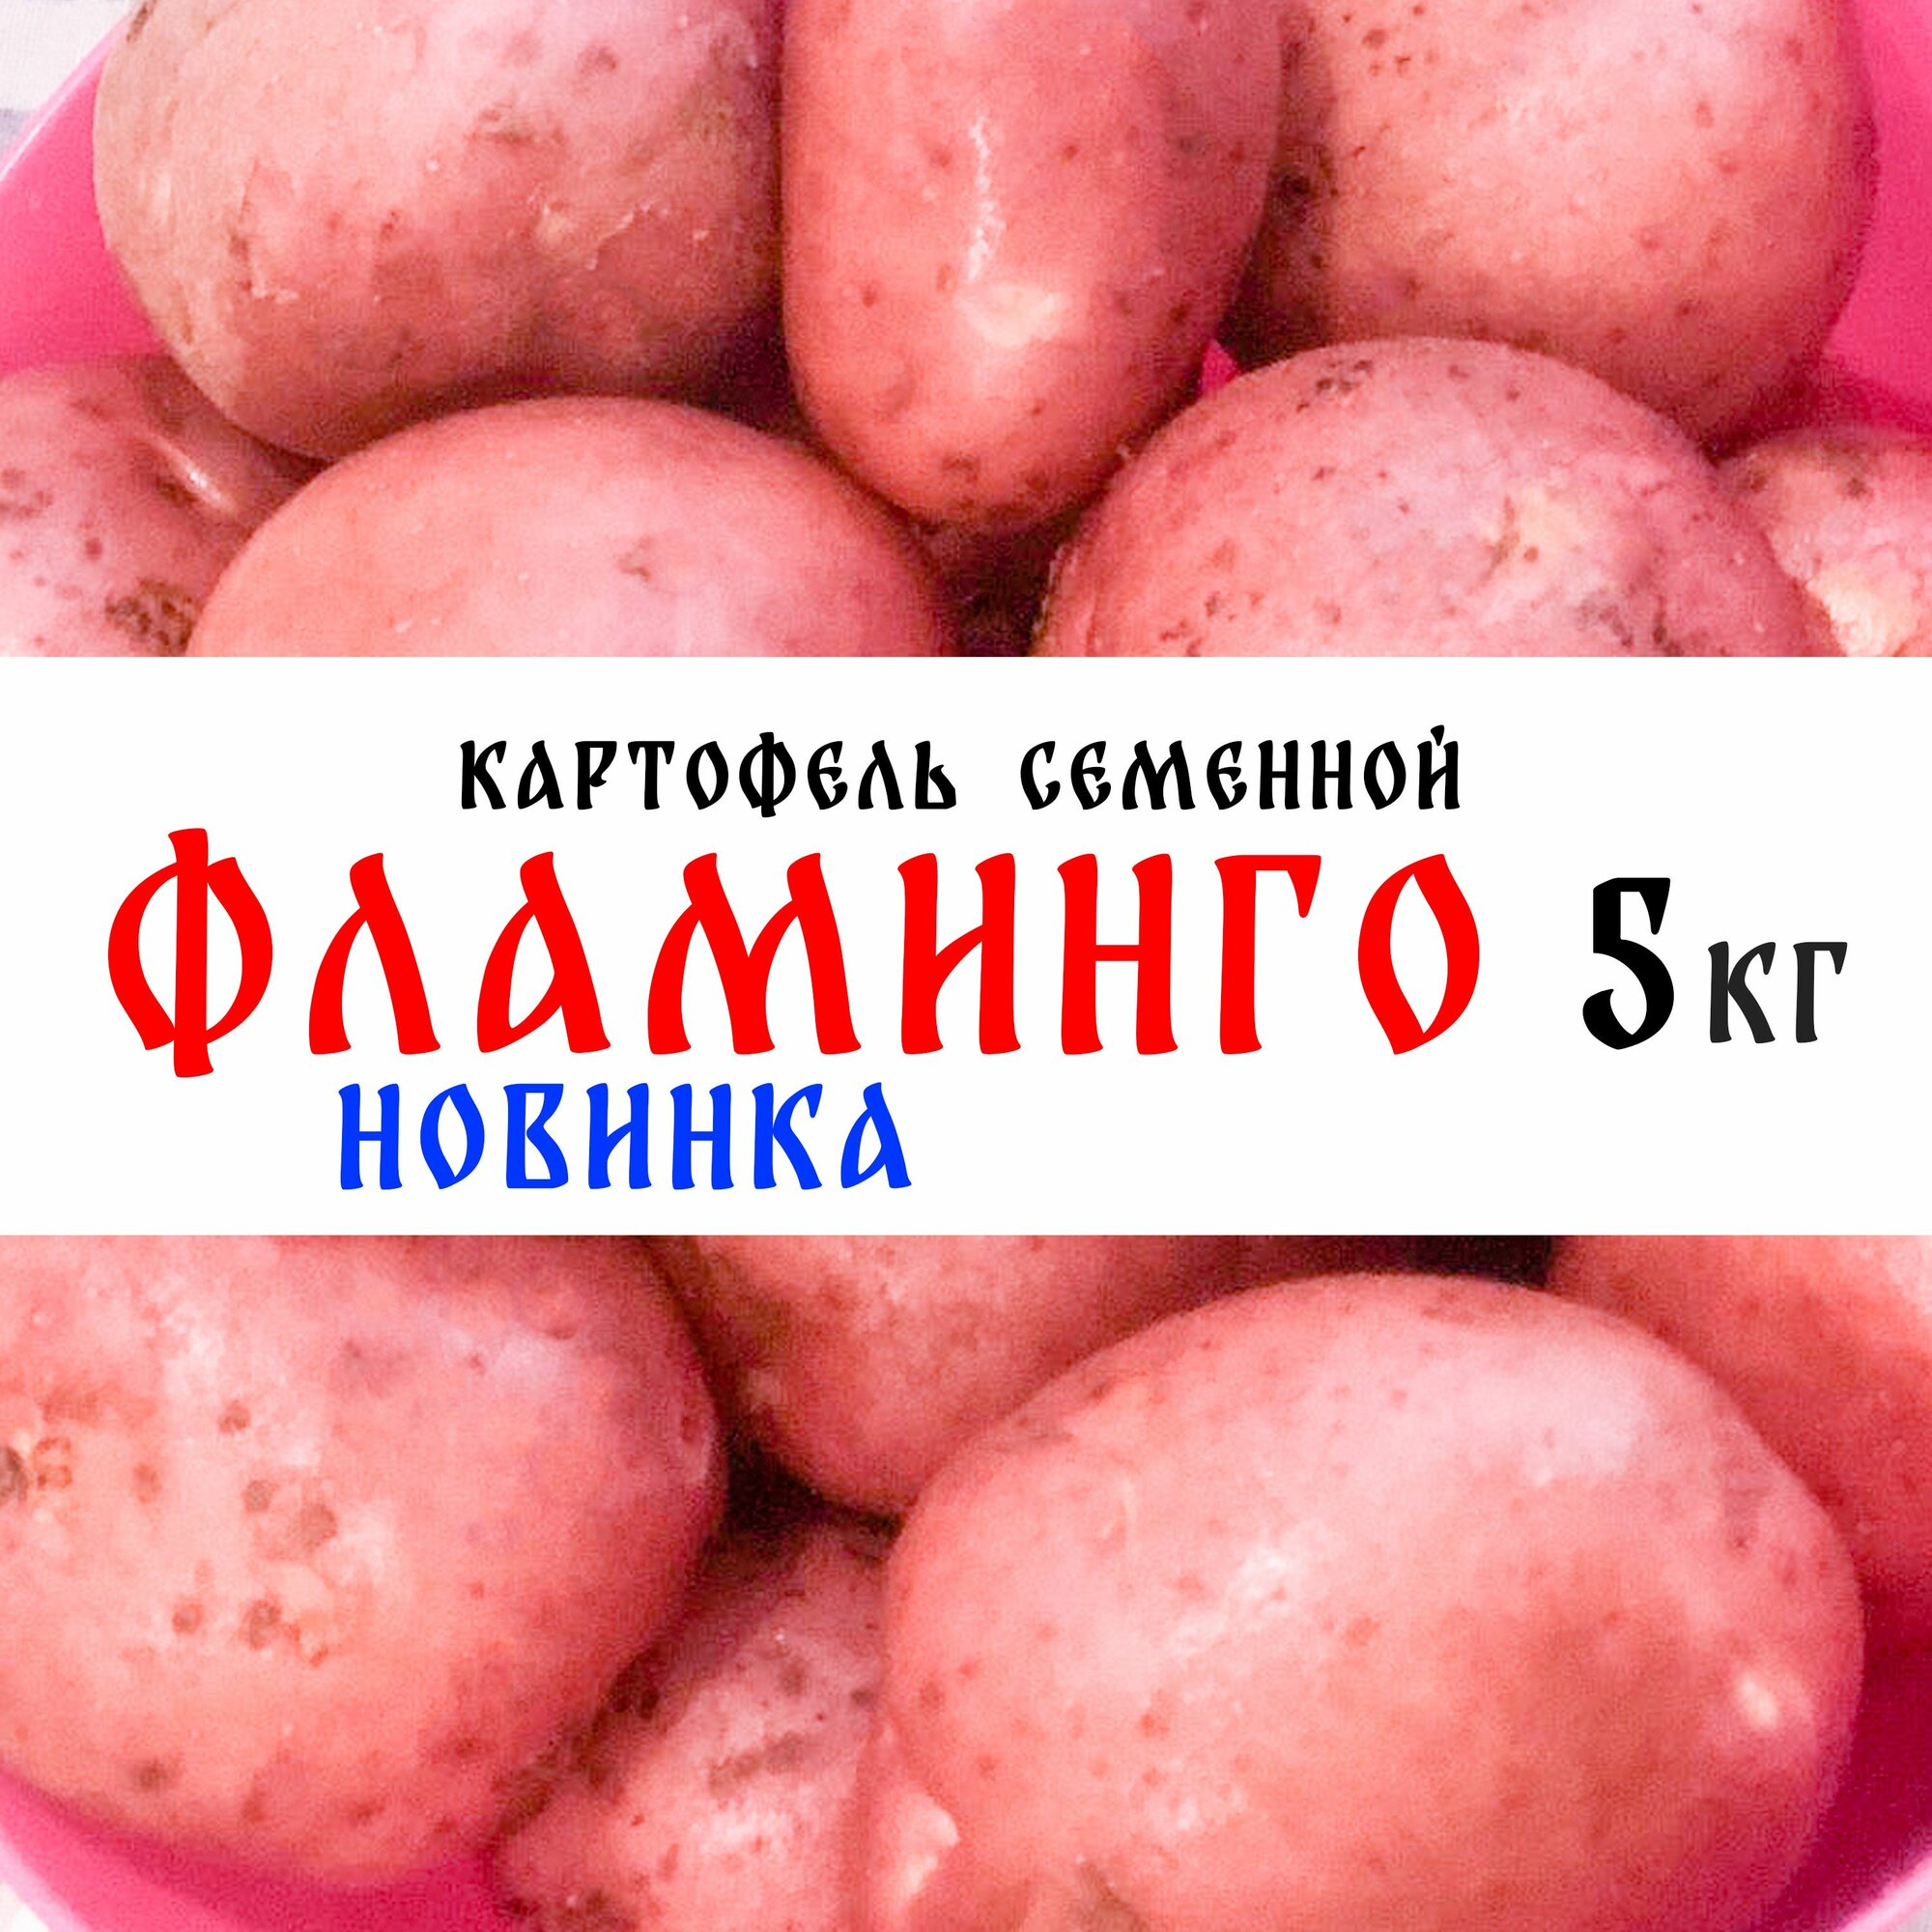 Семенной картофель сорта "Фламинго" 5кг, клубни, 1я репродукция (новинка)